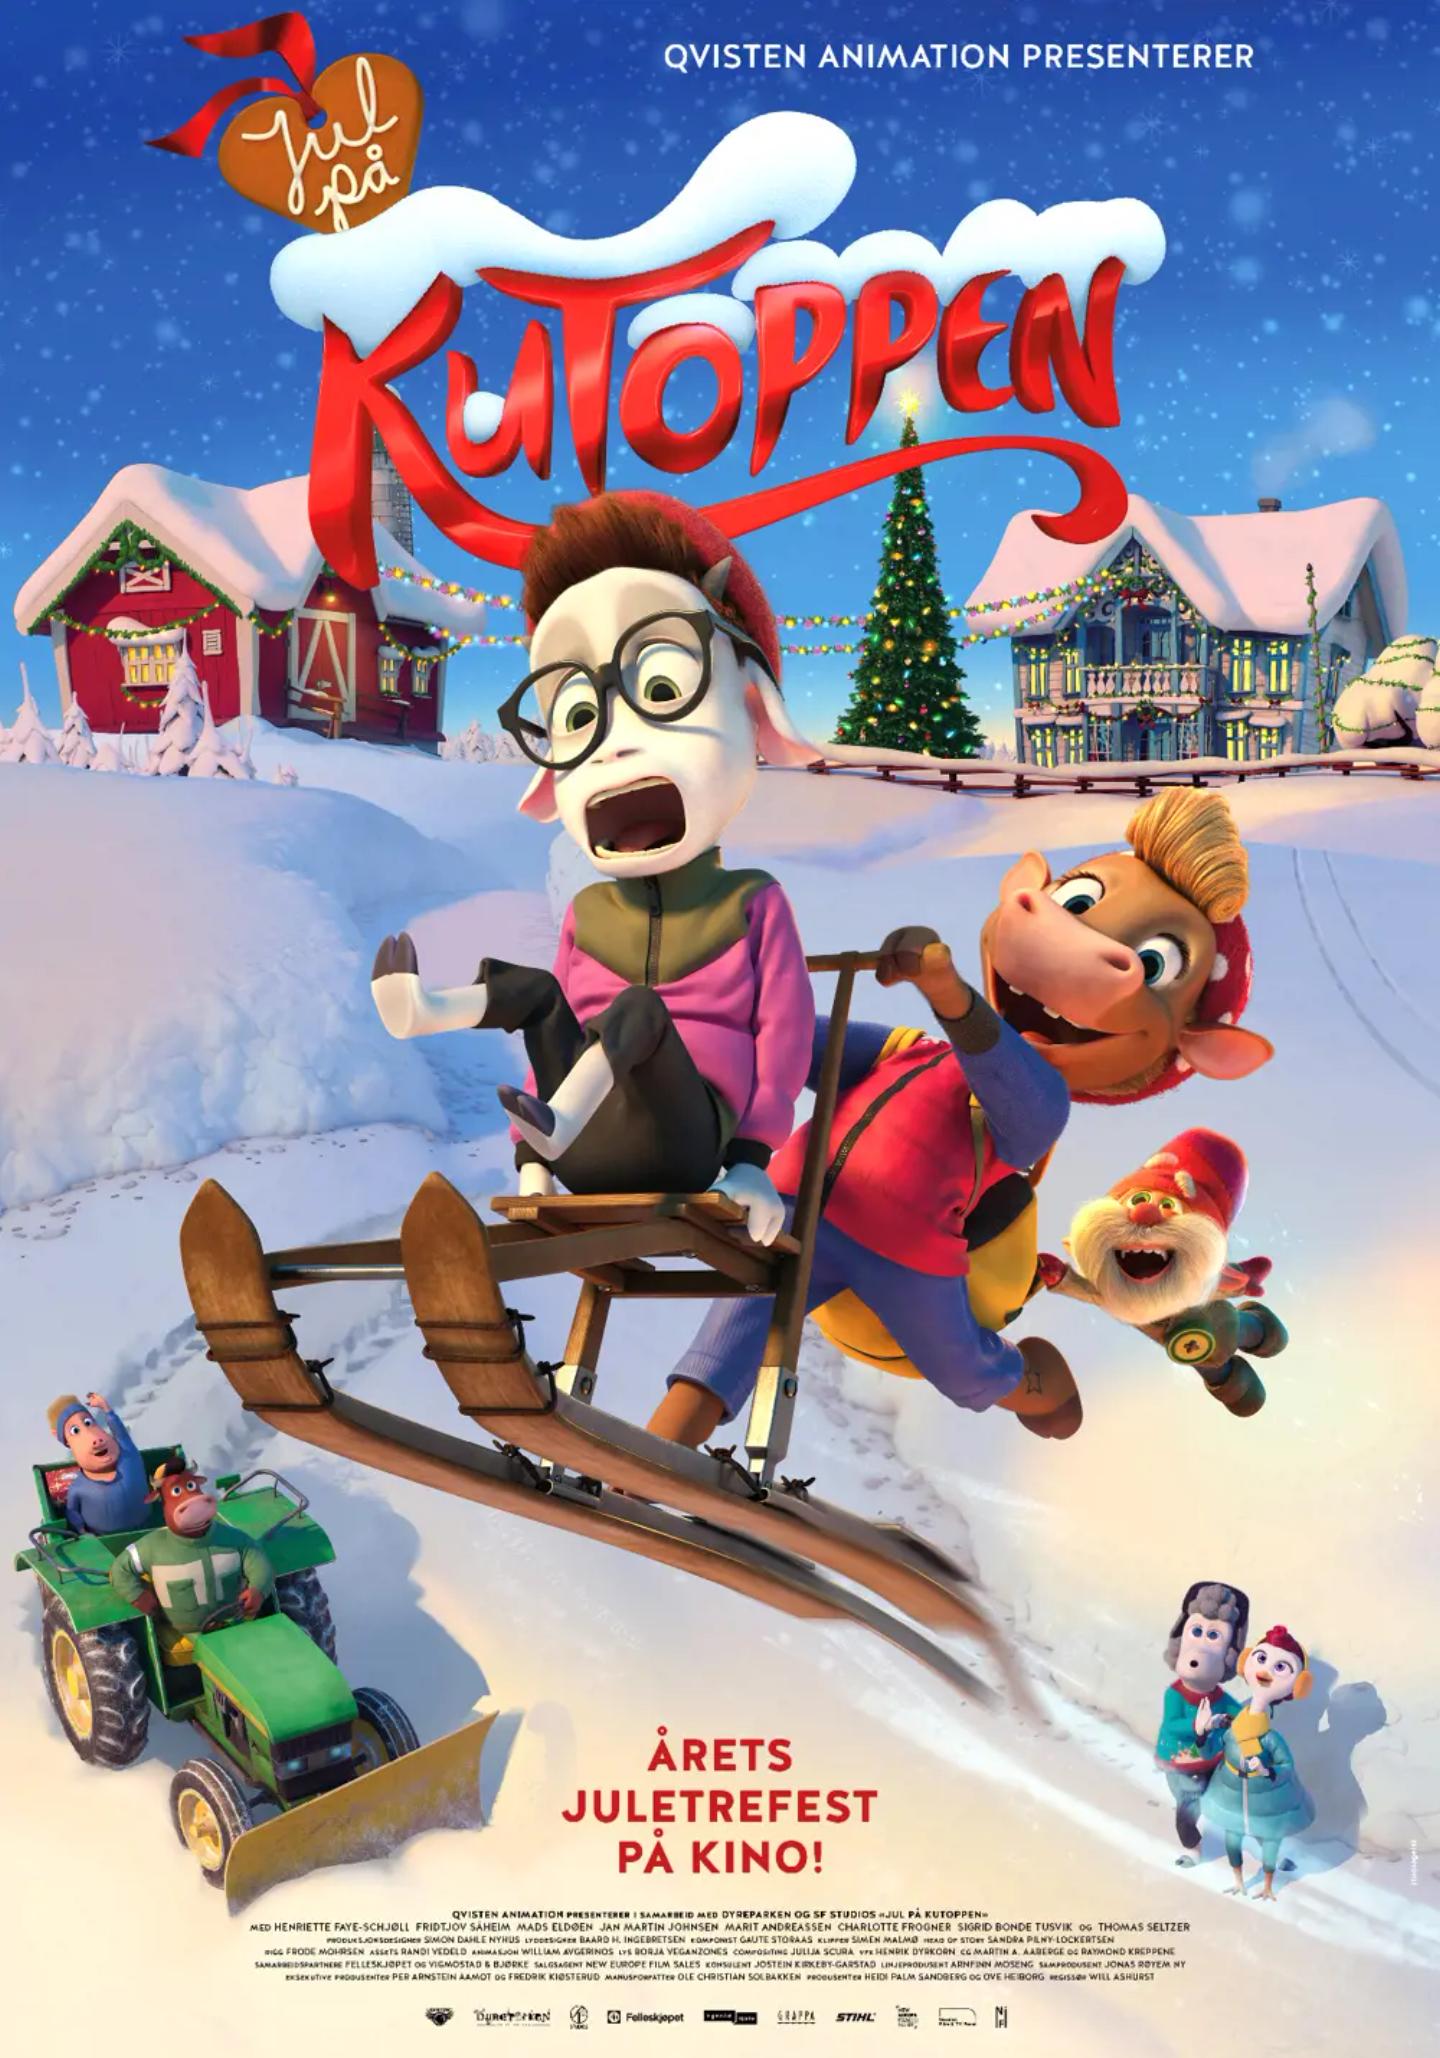 Plakat for 'Jul på KuToppen'